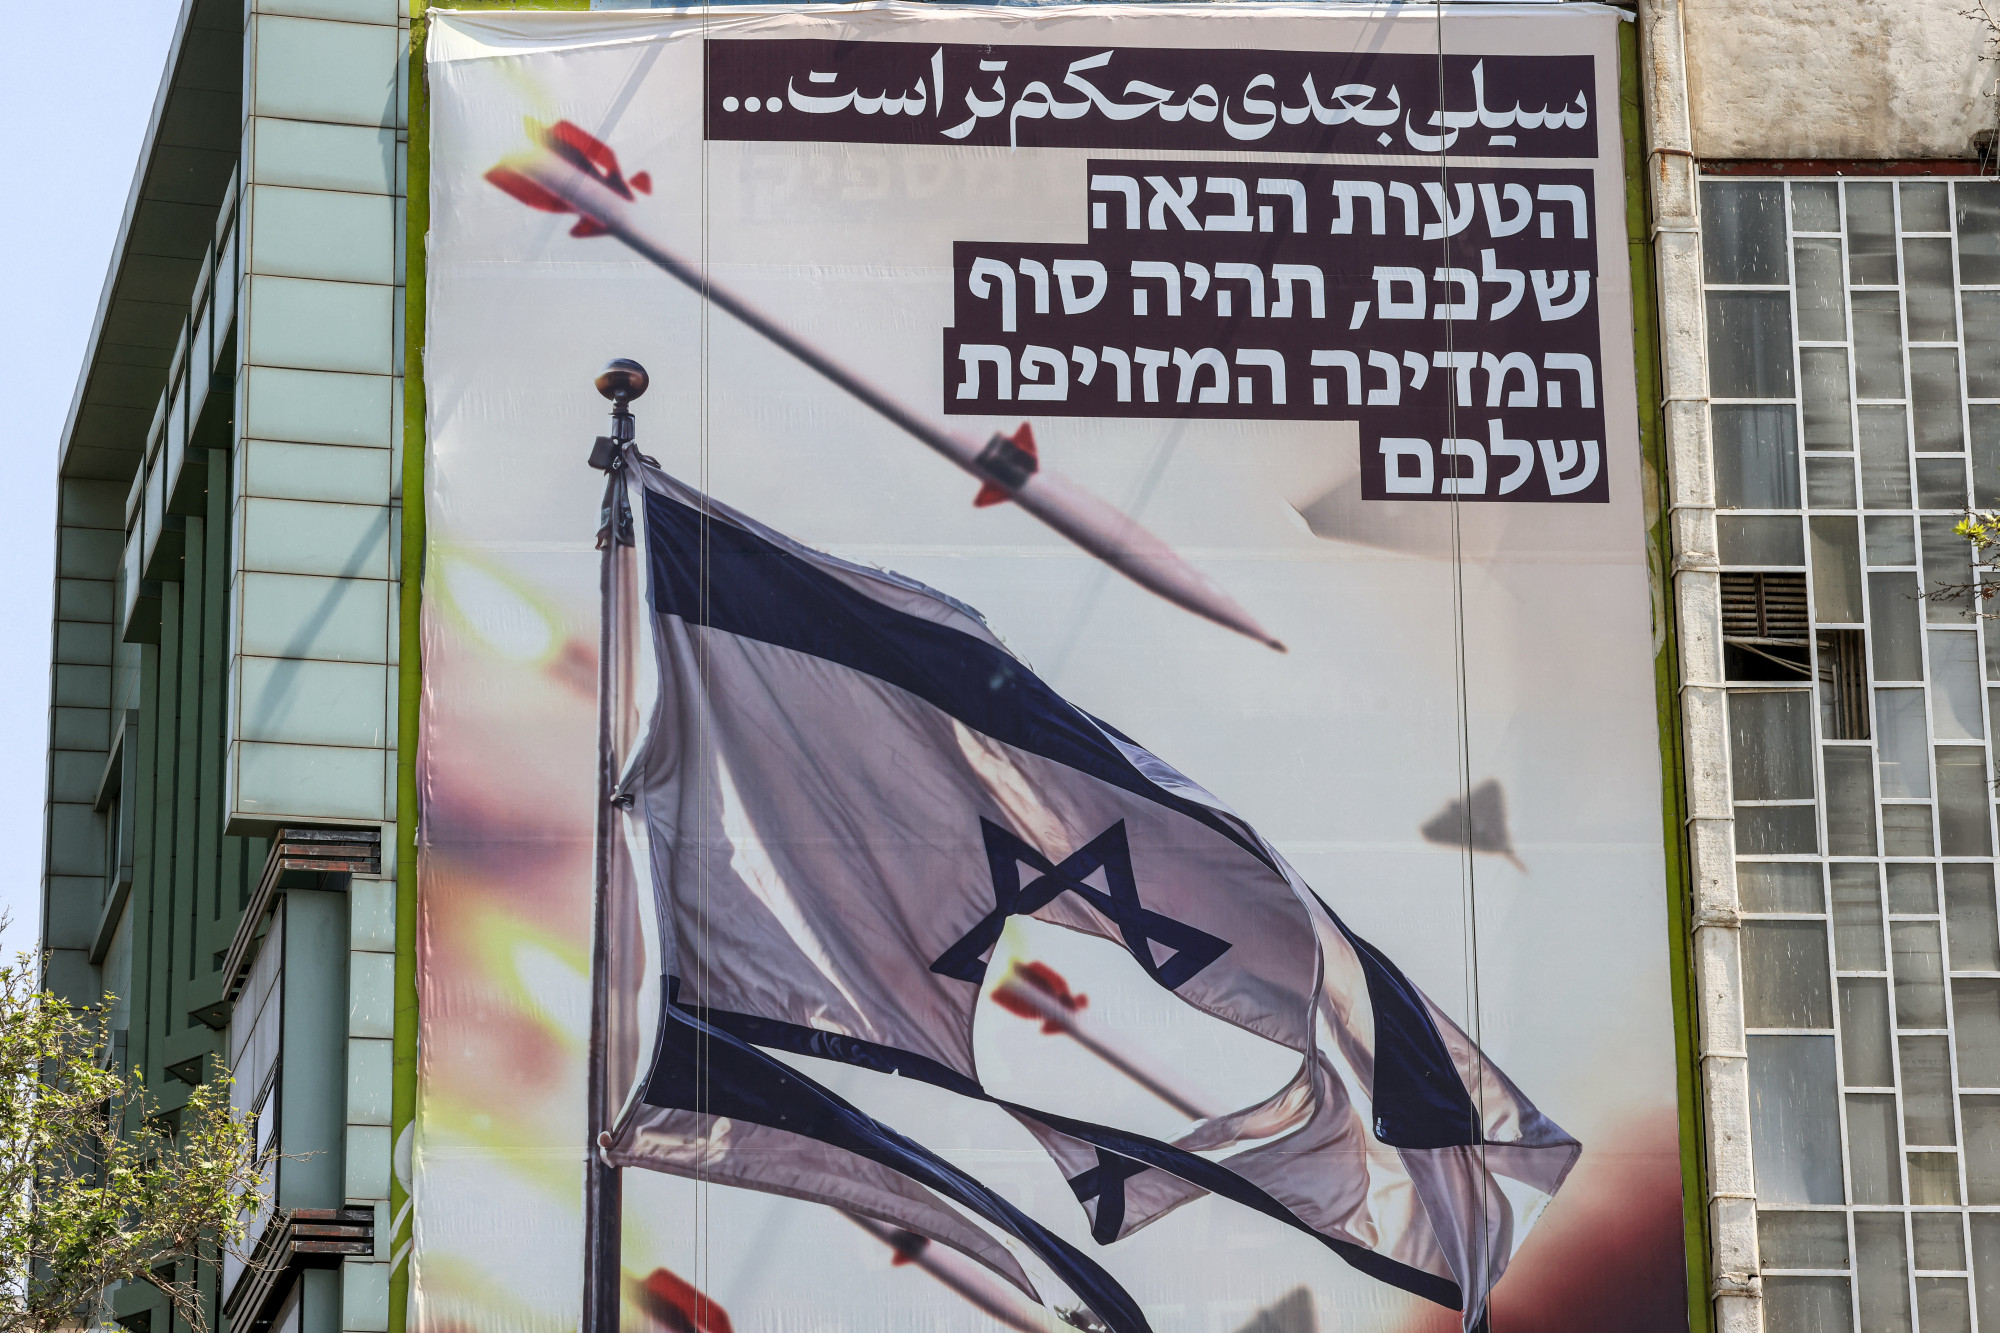 Óriás transzparens Teheránban április 14-én. Az izraeli zászló feletti perzsa felirat szerint: „a következő csapás keményebb lesz”, míg a héber nyelvű szöveg szerint „a következő hibátok a kamuállamotok végét jelenti”.